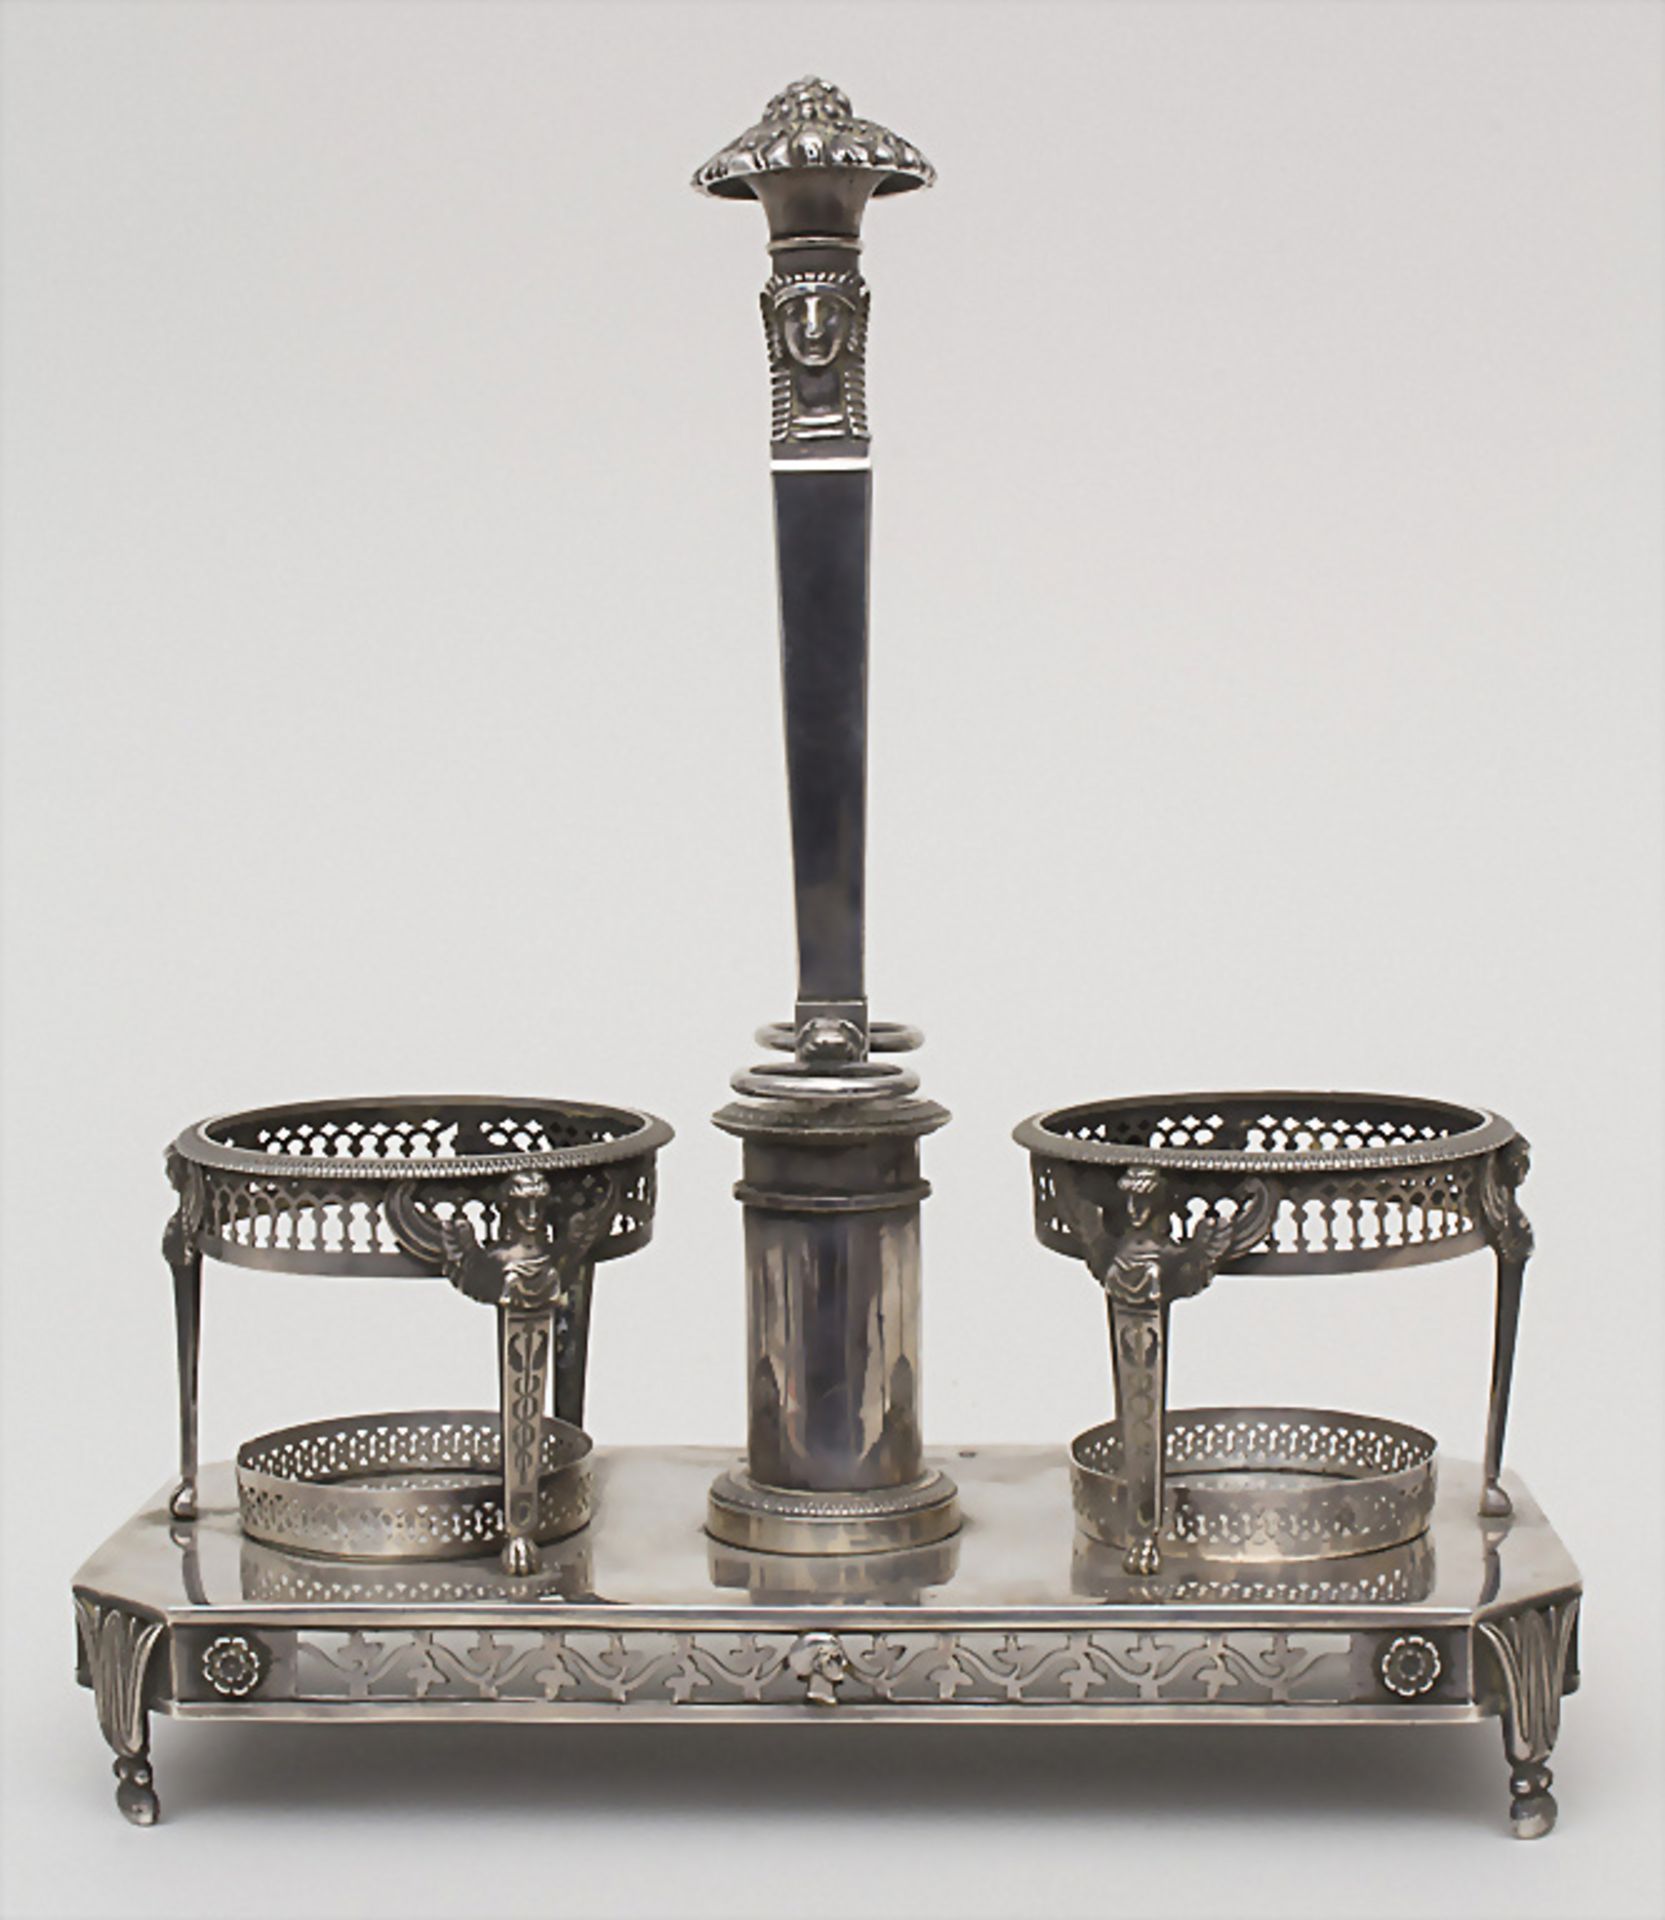 Empire-Huiliere / A silver oil and vinegar cruet set, Paris, 1798-1809